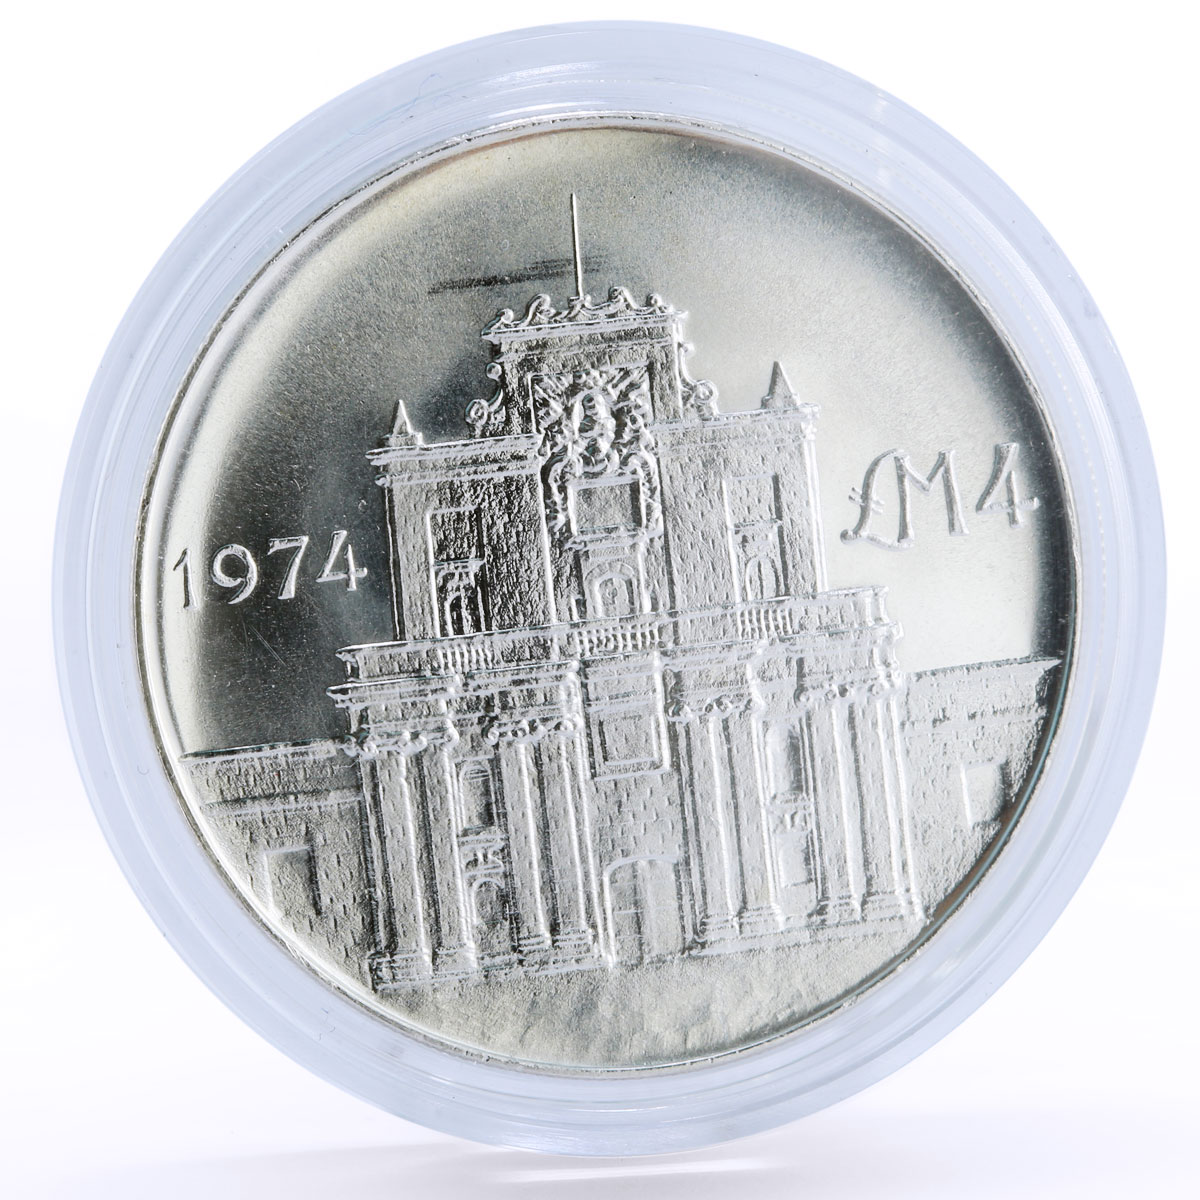 Malta 4 pounds Culture Heritage Notre Dam Church Architecture silver coin 1974